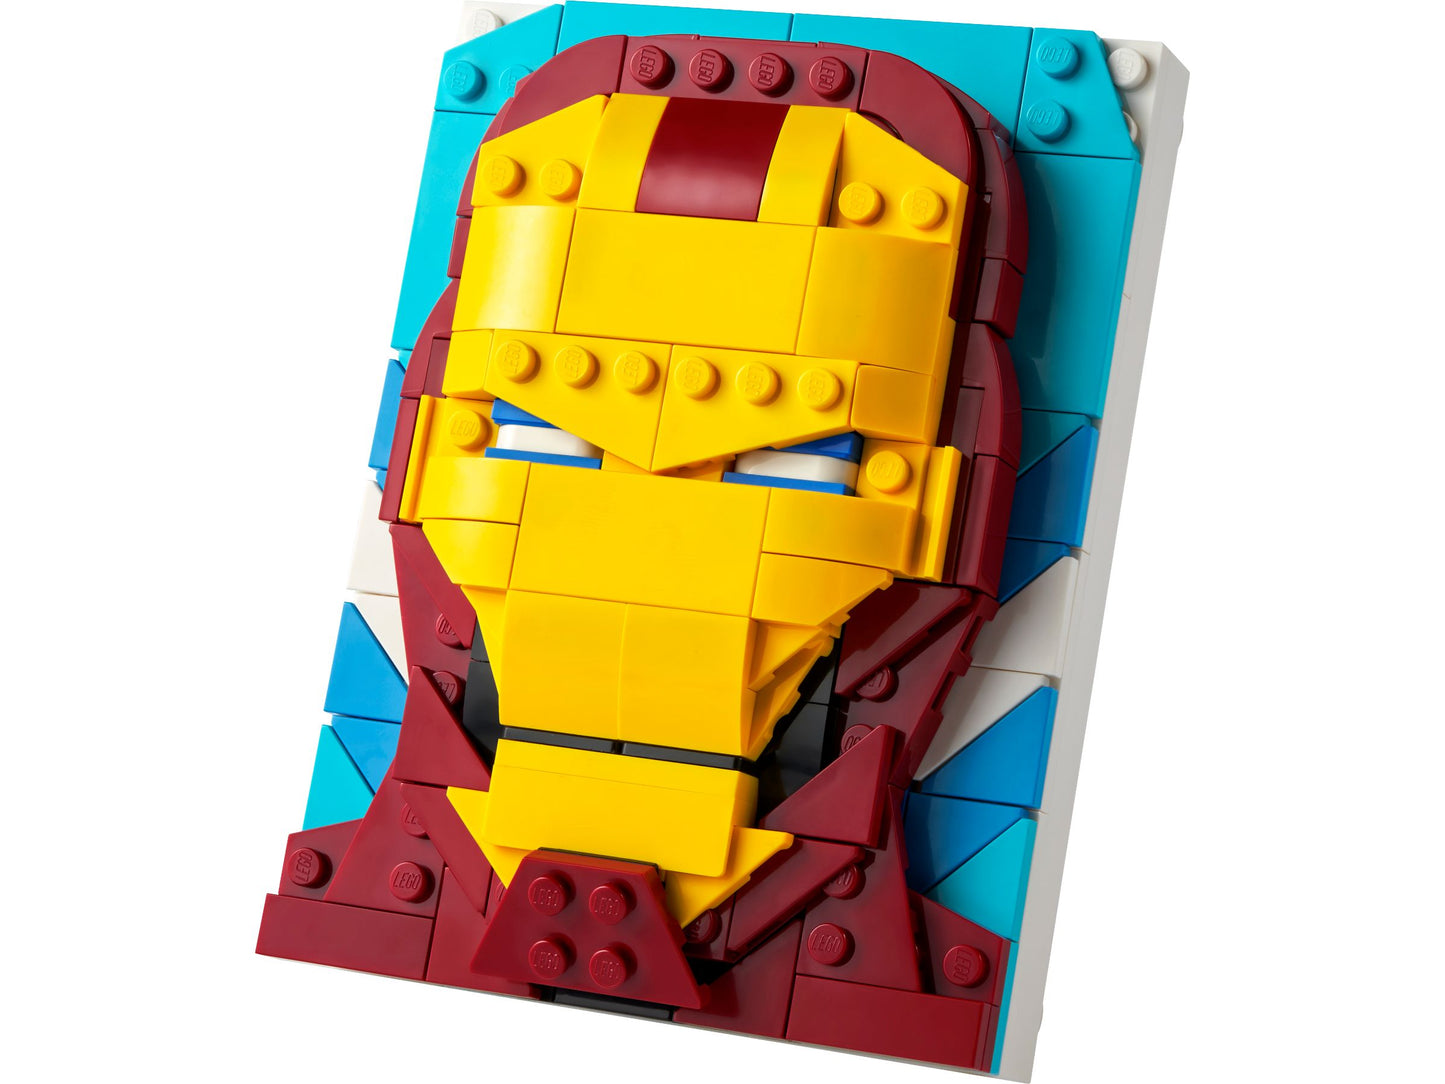 LEGO® Brick Sketches 40535 Iron Man - 200 Teile